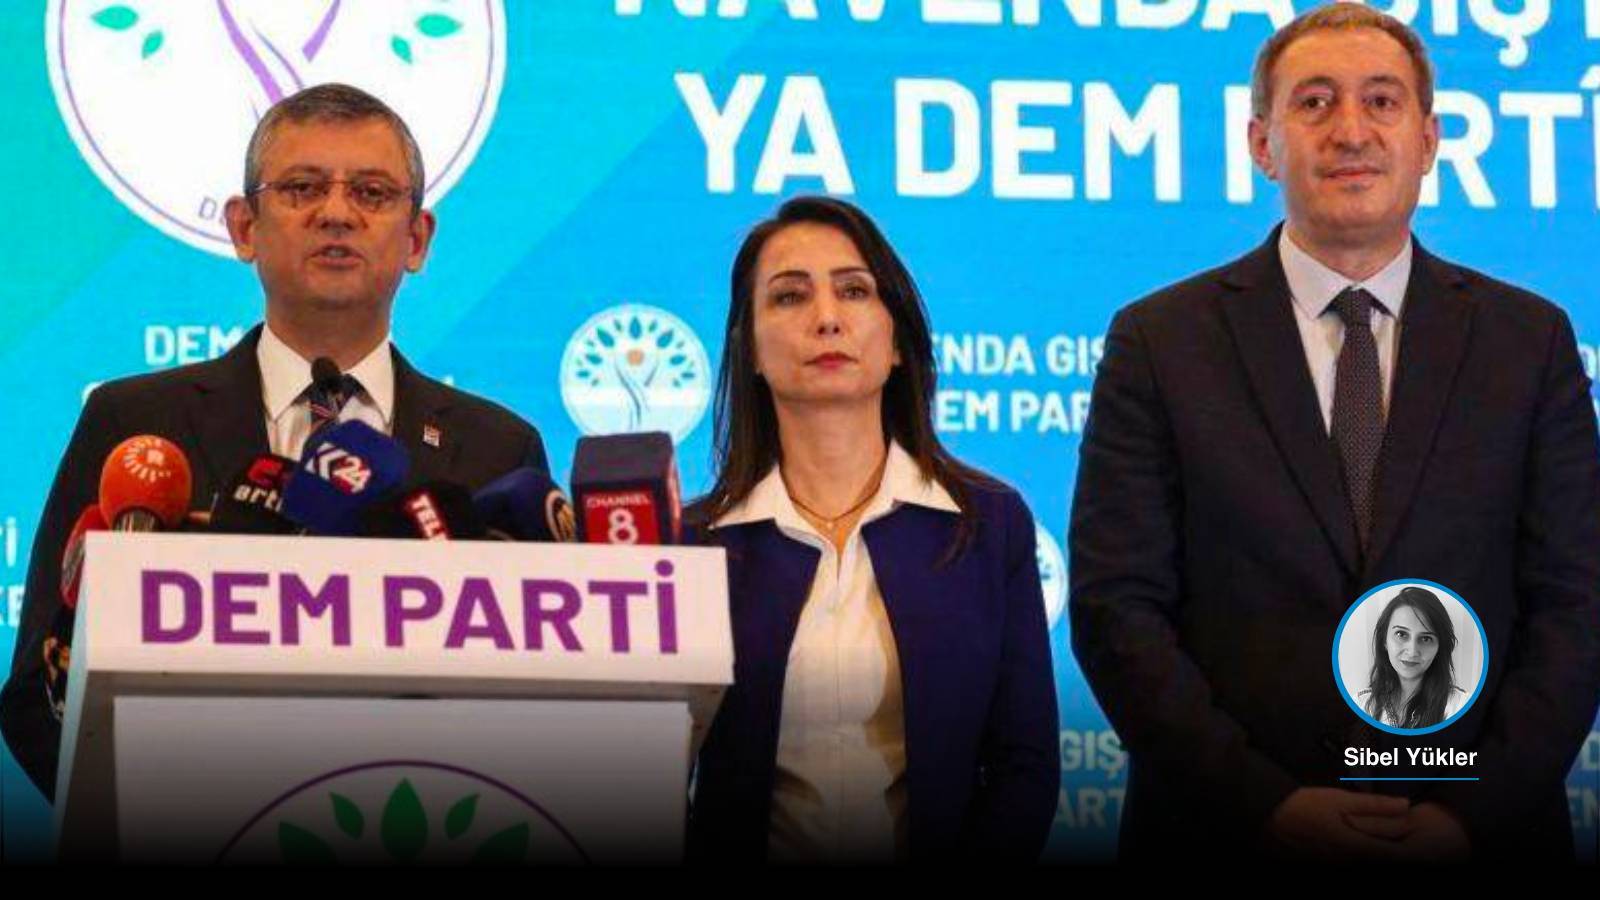 DEM Parti, CHP’ye gidiyor: “Anayasa Hazırlık Komisyonu” kuran DEM, Erdoğan’la görüşen Özel’e kendi yol haritasını sunacak